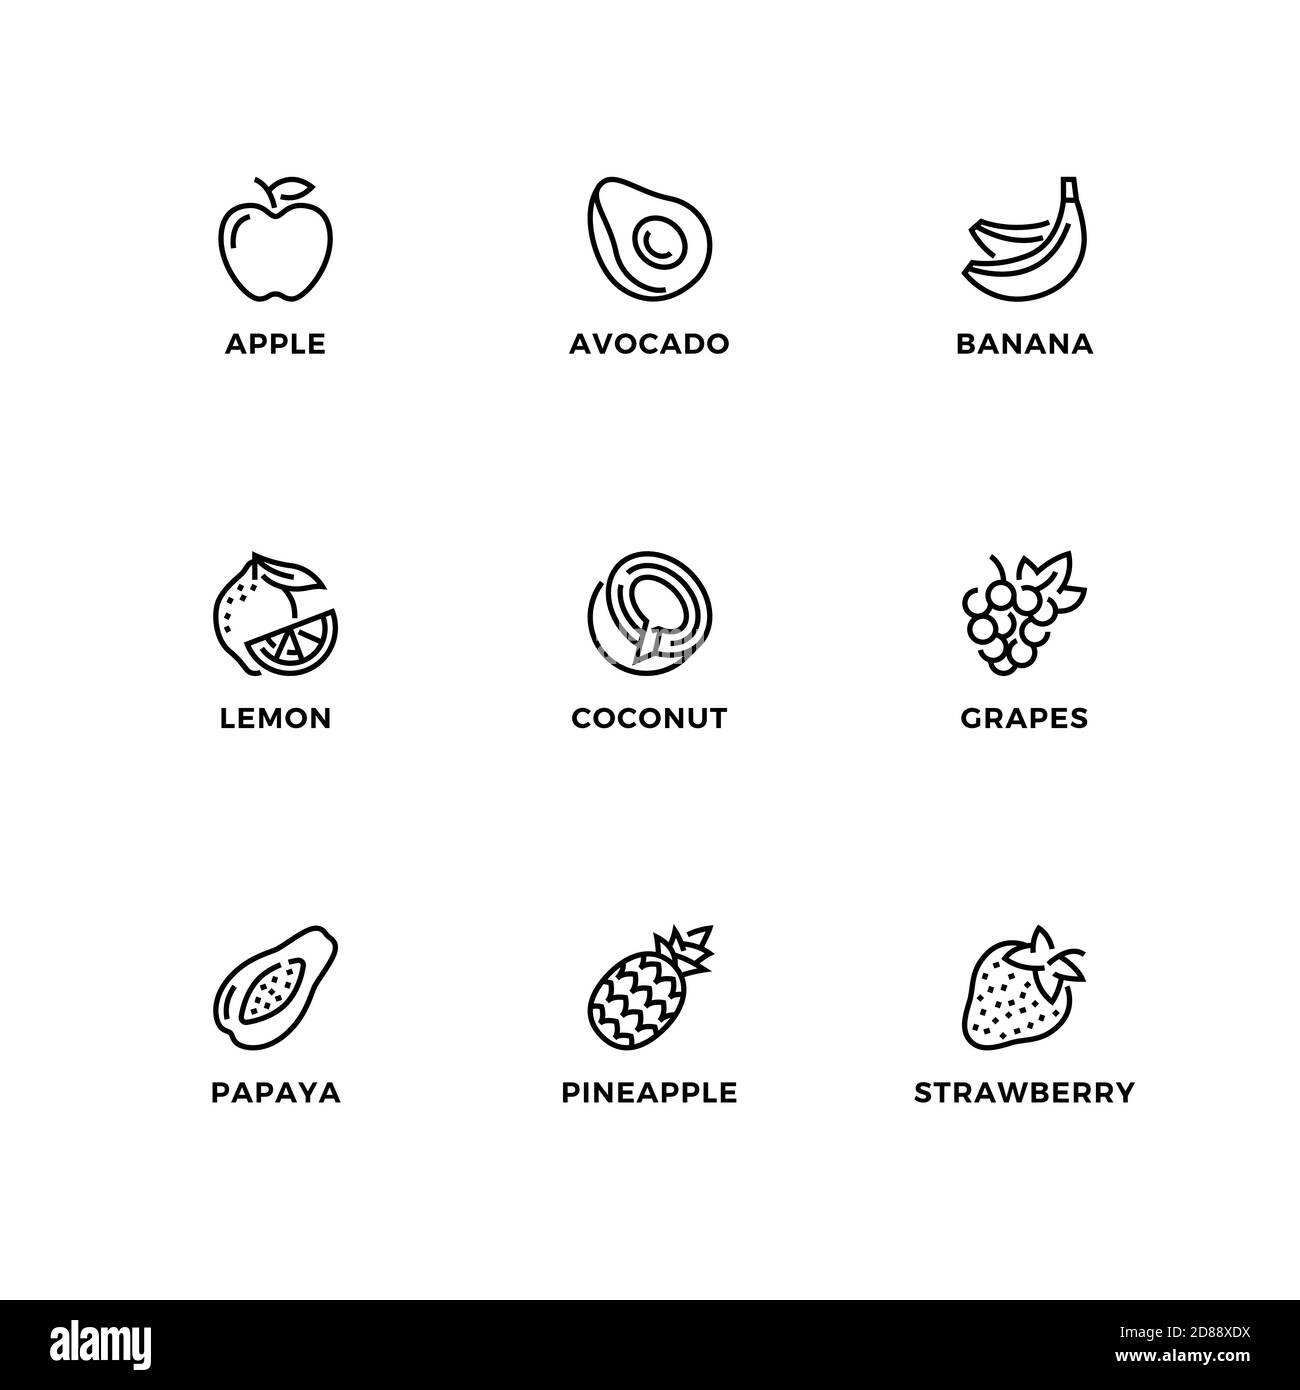 Insieme vettoriale di elementi di disegno, modello di disegno del logo, icone e distintivi per fruttis sano. Set di icone di linea, tratto modificabile. Illustrazione Vettoriale